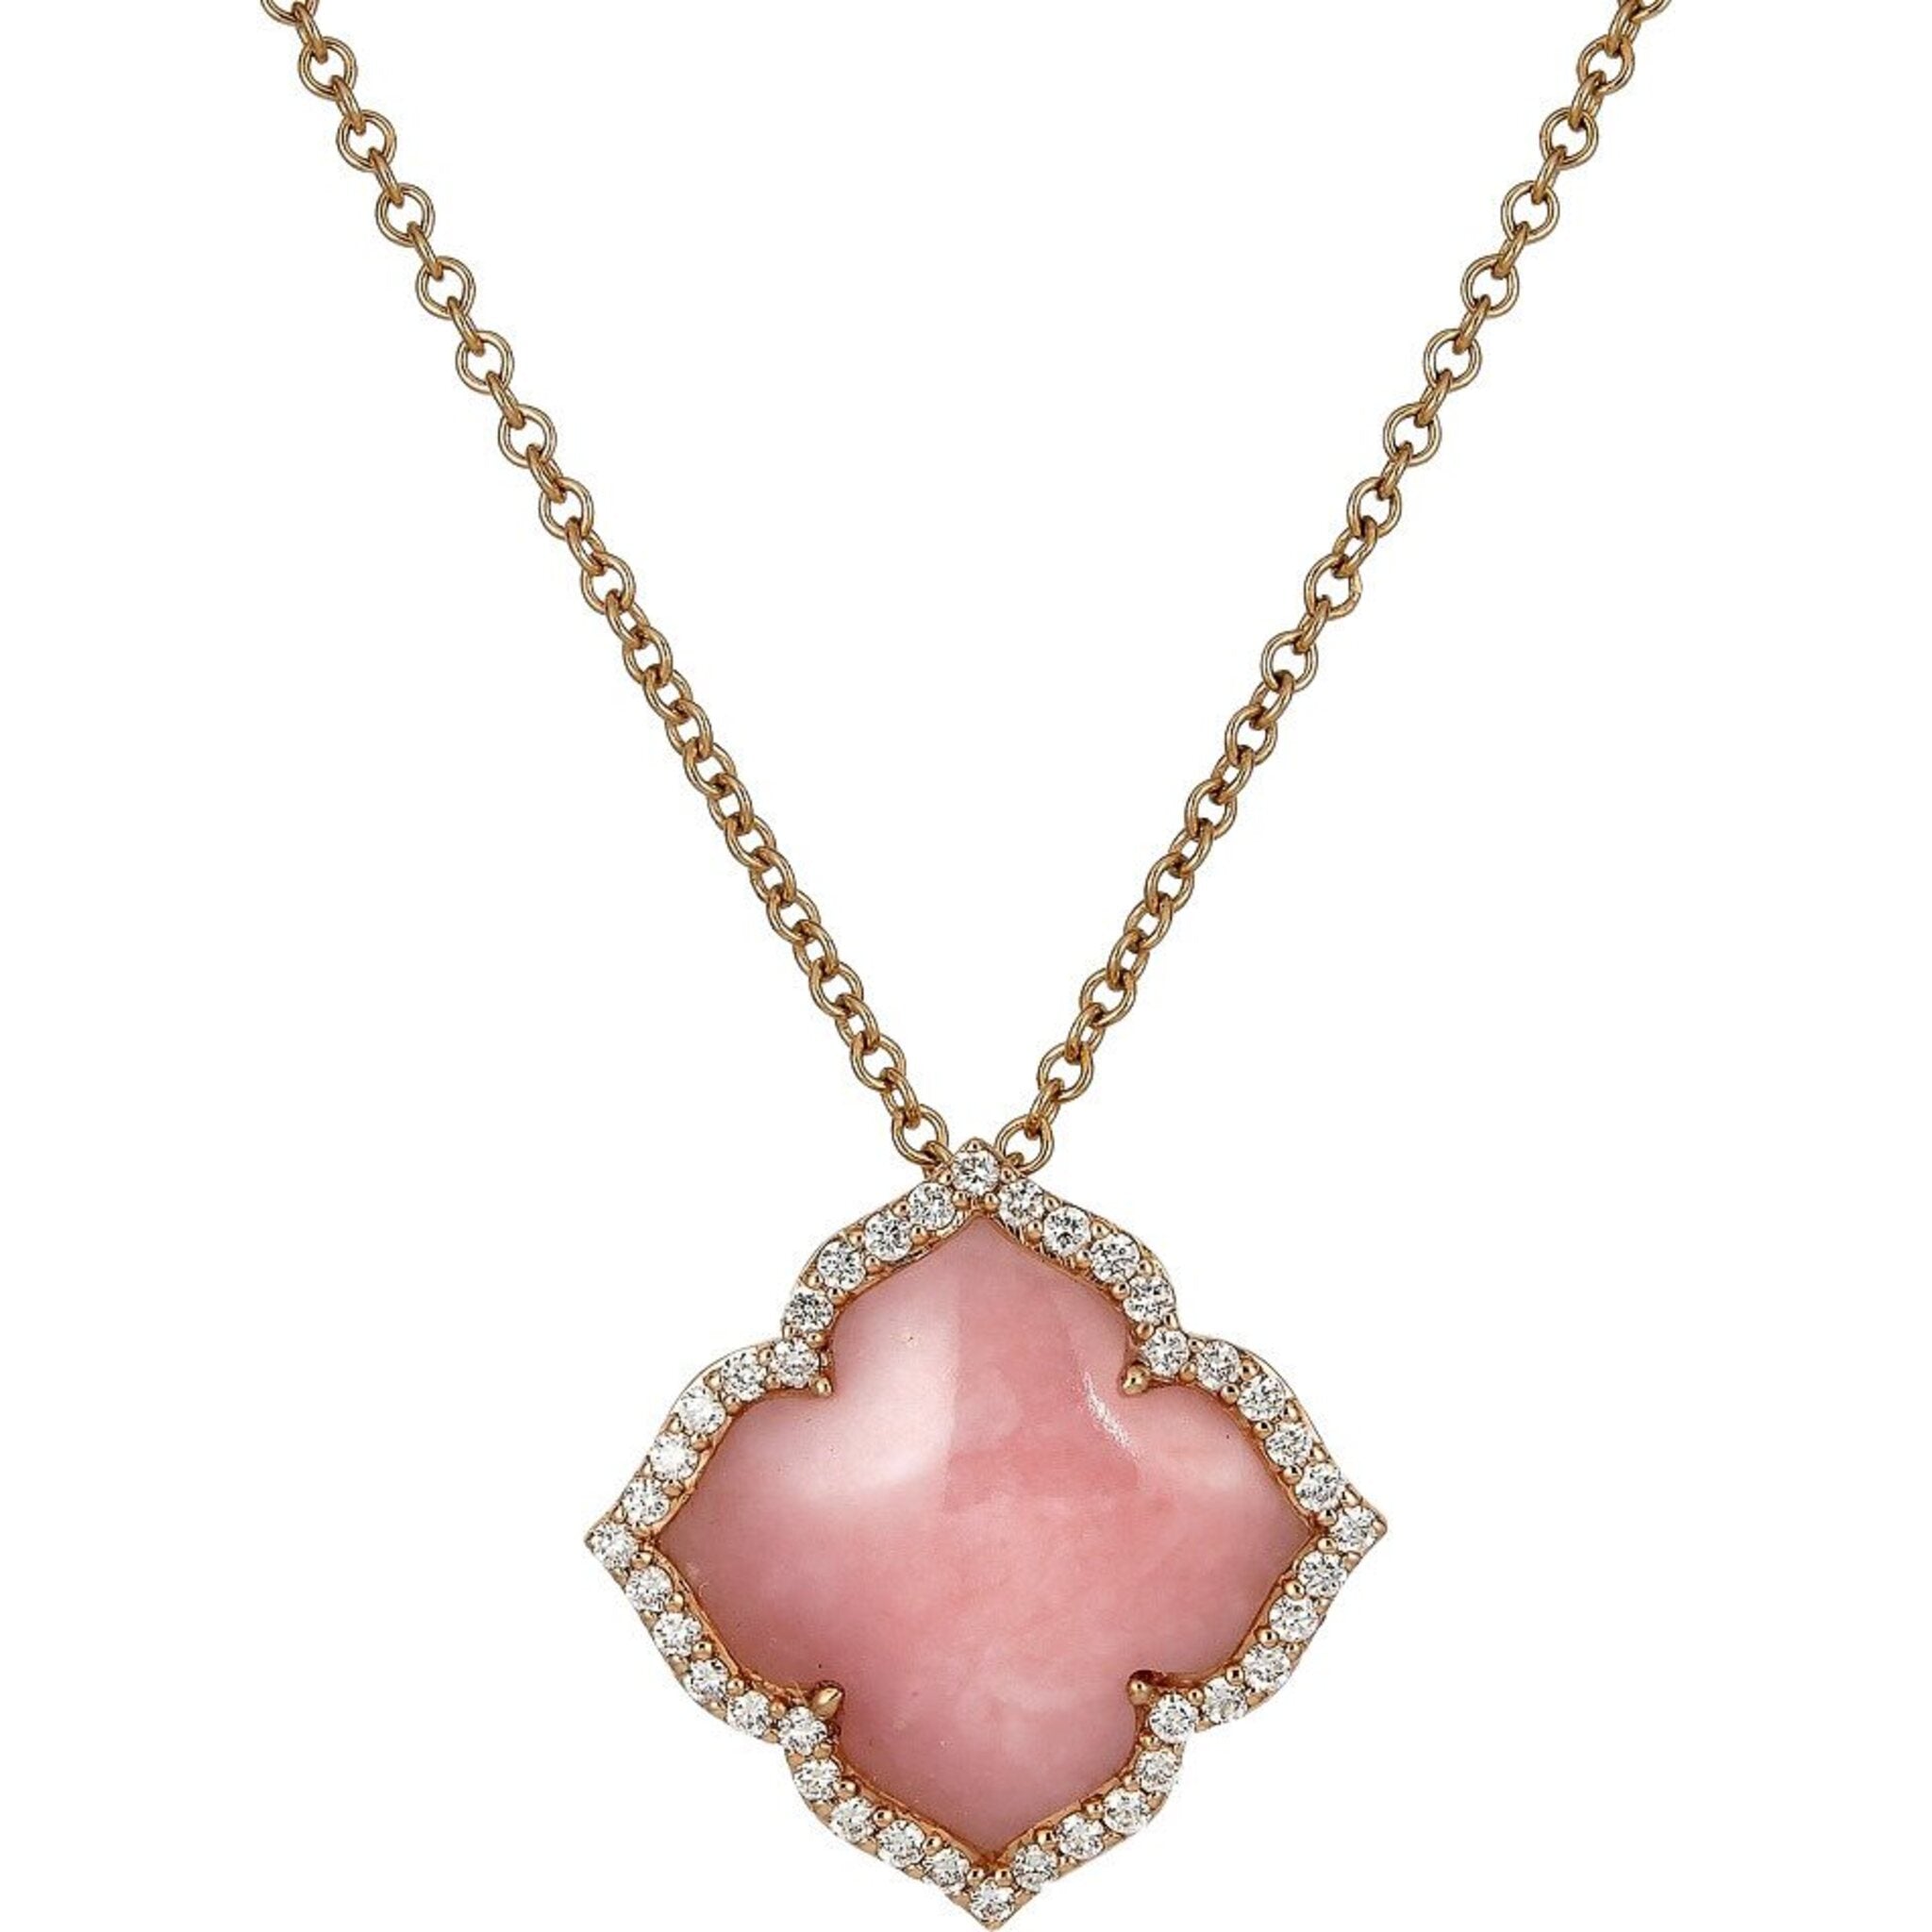 Designer Cleef Clover Hearts Necklace For Women 18k Rose Gold